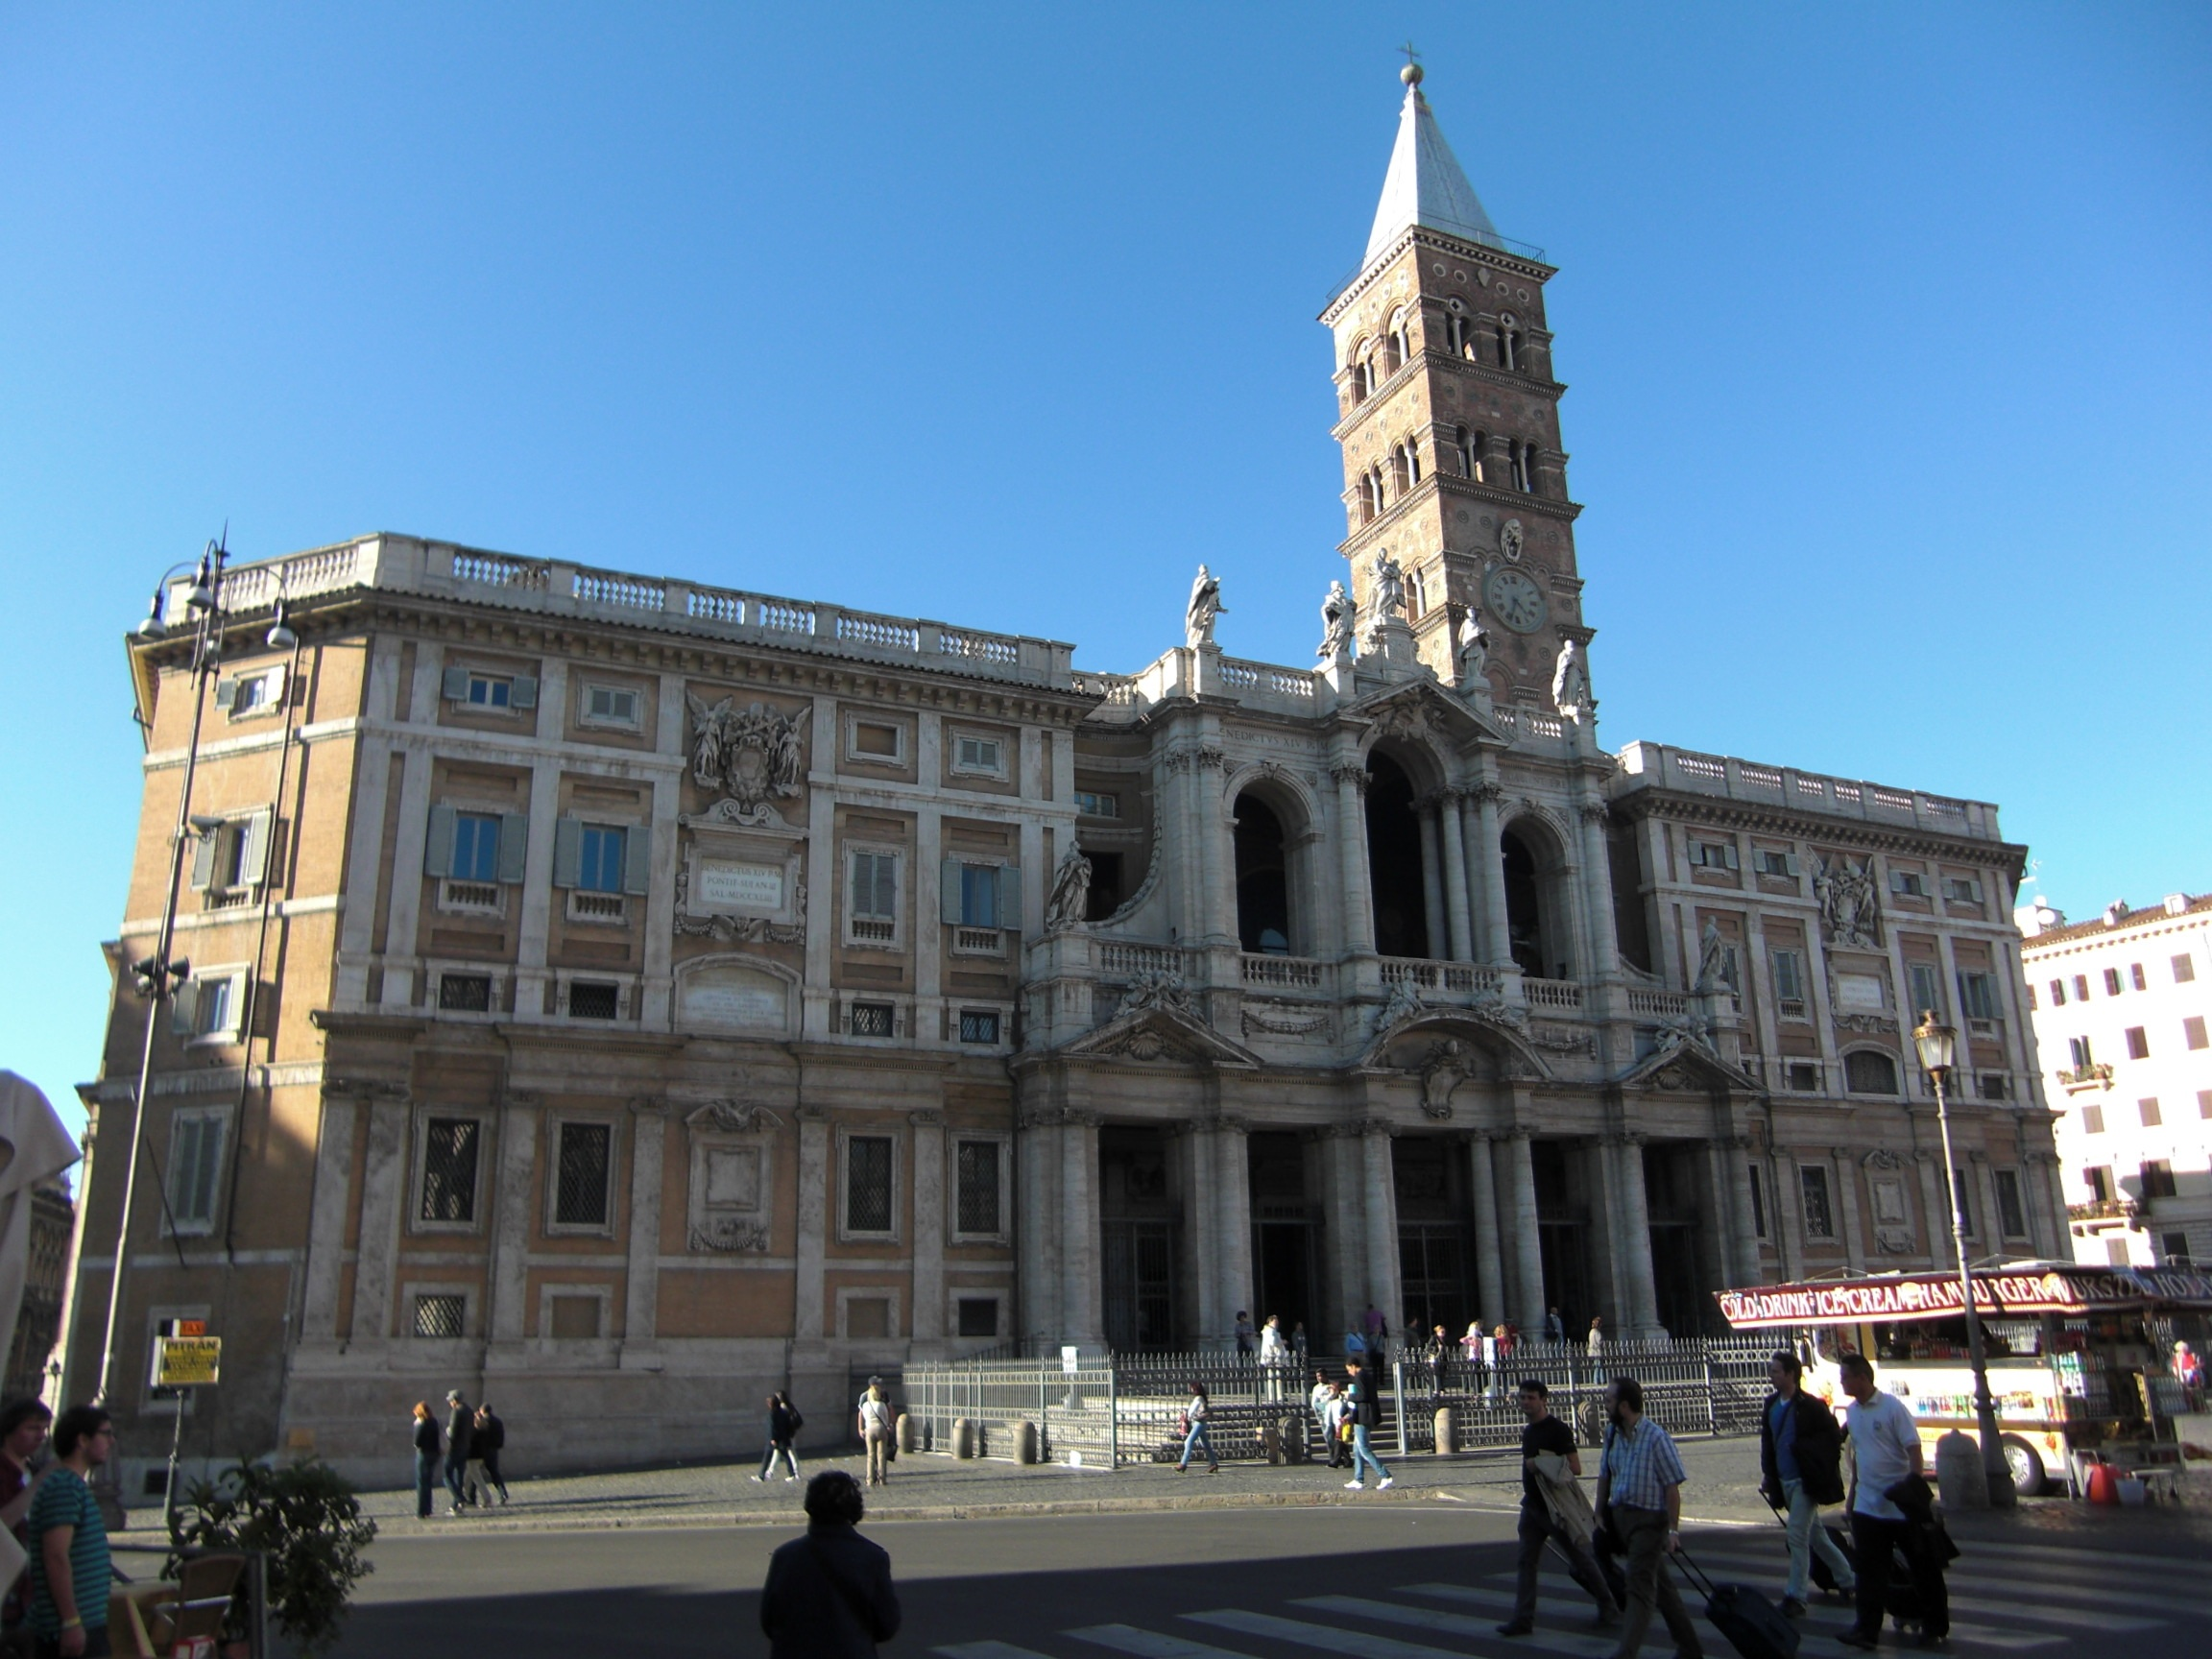 Basilica di Santa Maria Maggiore, Rome: All Year